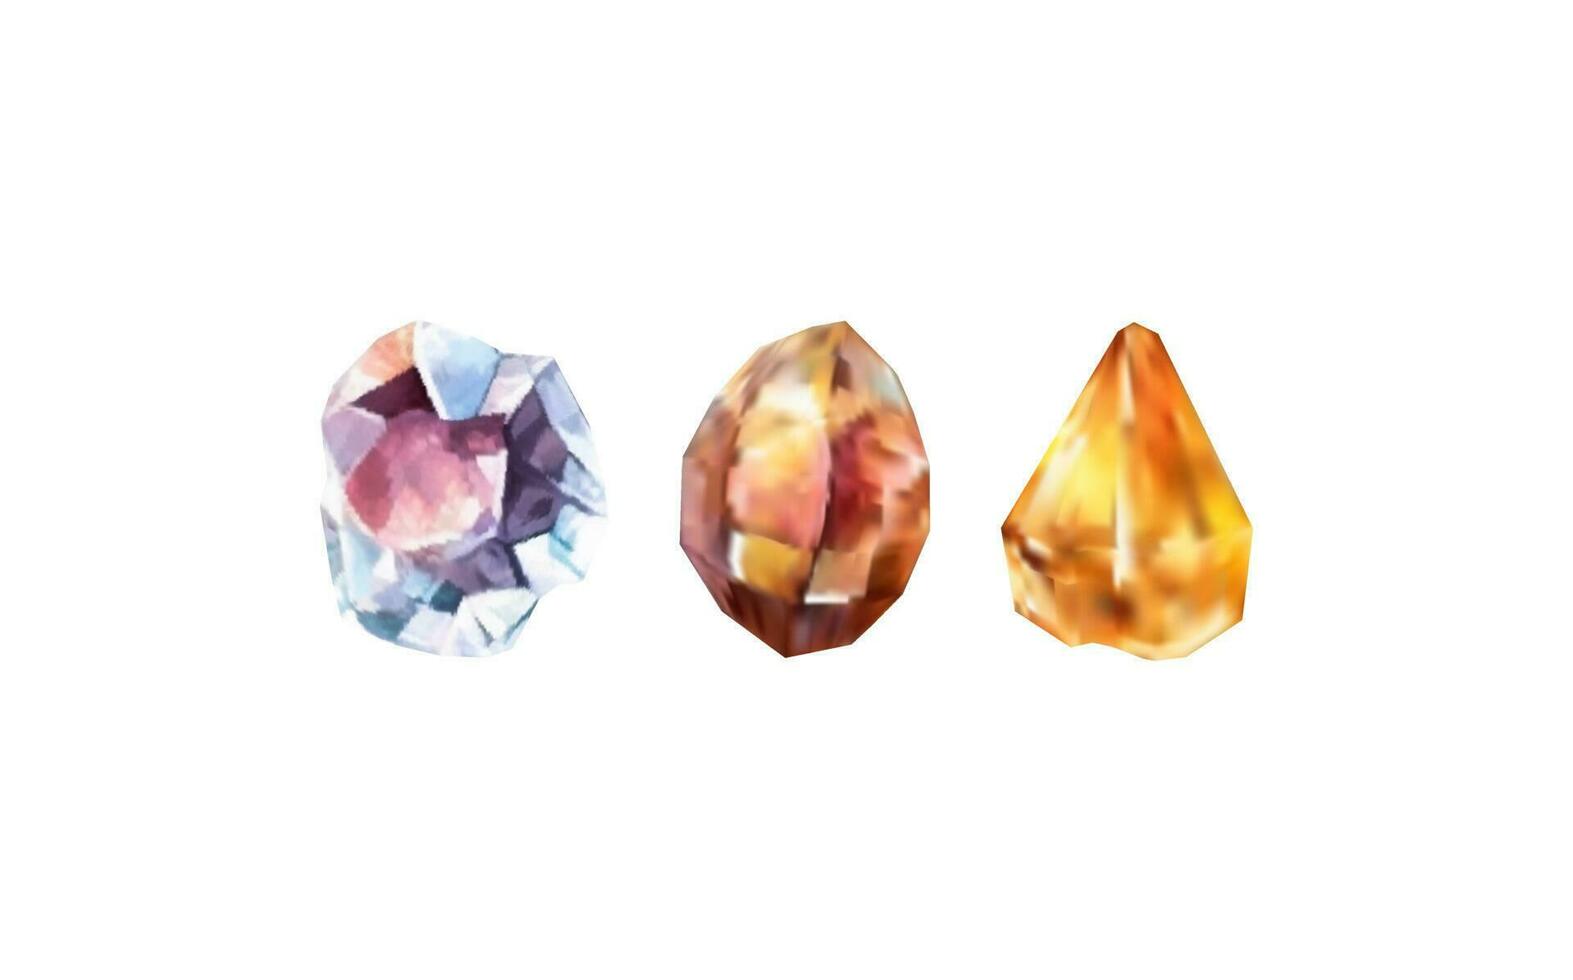 un colección de imágenes de diamantes de varios geométrico formas, colores y tallas.vidrio brillante cristales con diferente sombras reflejando luz.vector realista conjunto de resplandor piedra preciosa o vistoso hielo. vector